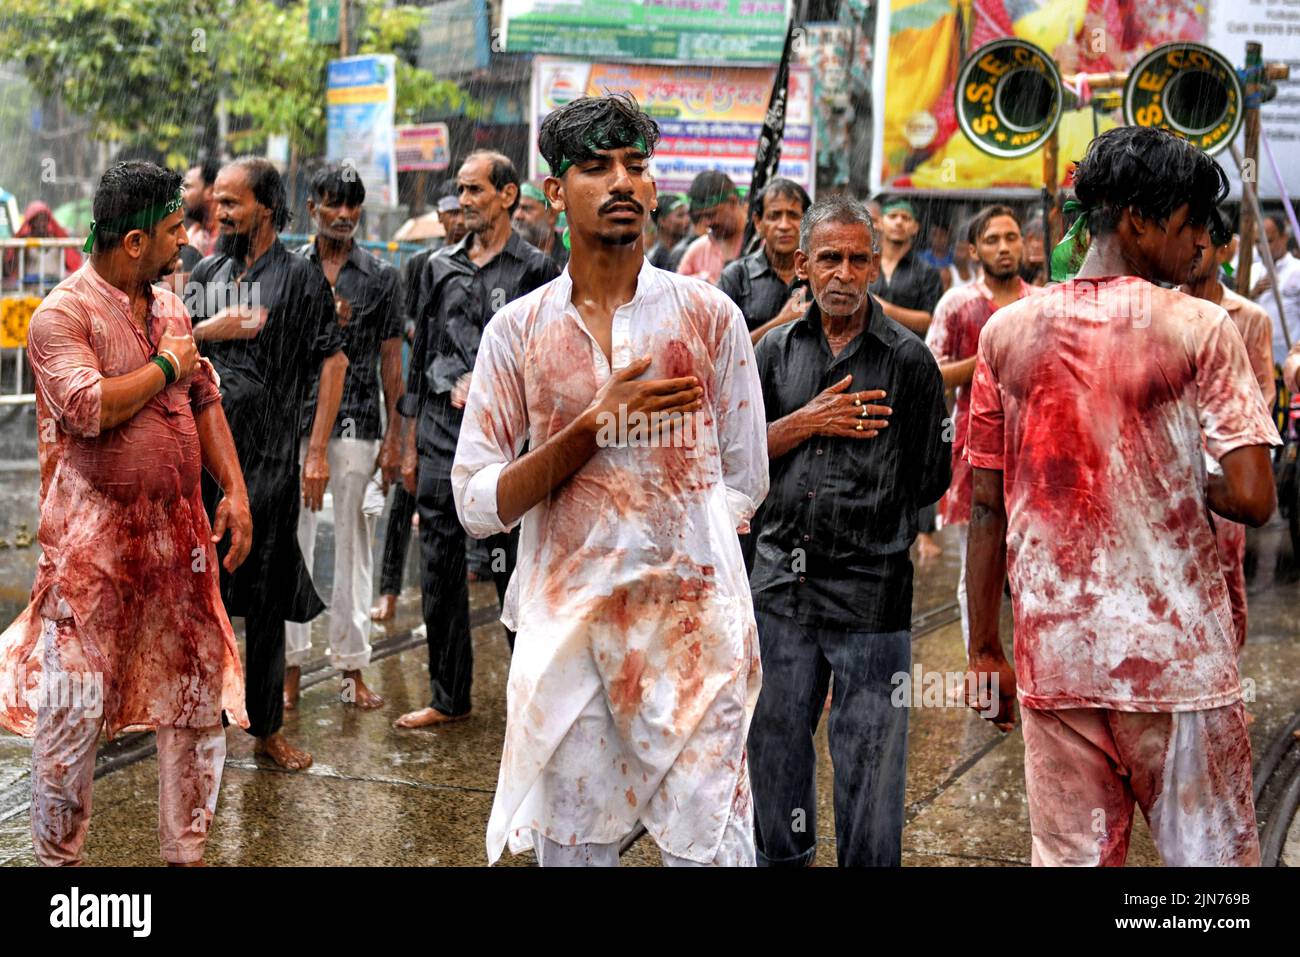 (NOTE AUX ÉDITEURS : l'image contient du contenu graphique.) Les musulmans chiites couverts de sang battent leurs coffres et leurs têtes avec des lames pendant la procession muharram de Kolkata. Muharram est le premier mois du calendrier islamique et Ashura est le dixième jour du mois de Muharram sur lequel se fait la commémoration du martyre de l'Imam Hussain, petit-fils du prophète Mahomet (PBUH), pendant la bataille de Karbala. C'est une partie de deuil pour les musulmans chiites et un jour de jeûne pour les musulmans sunnites qui est observé partout dans le monde. Banque D'Images